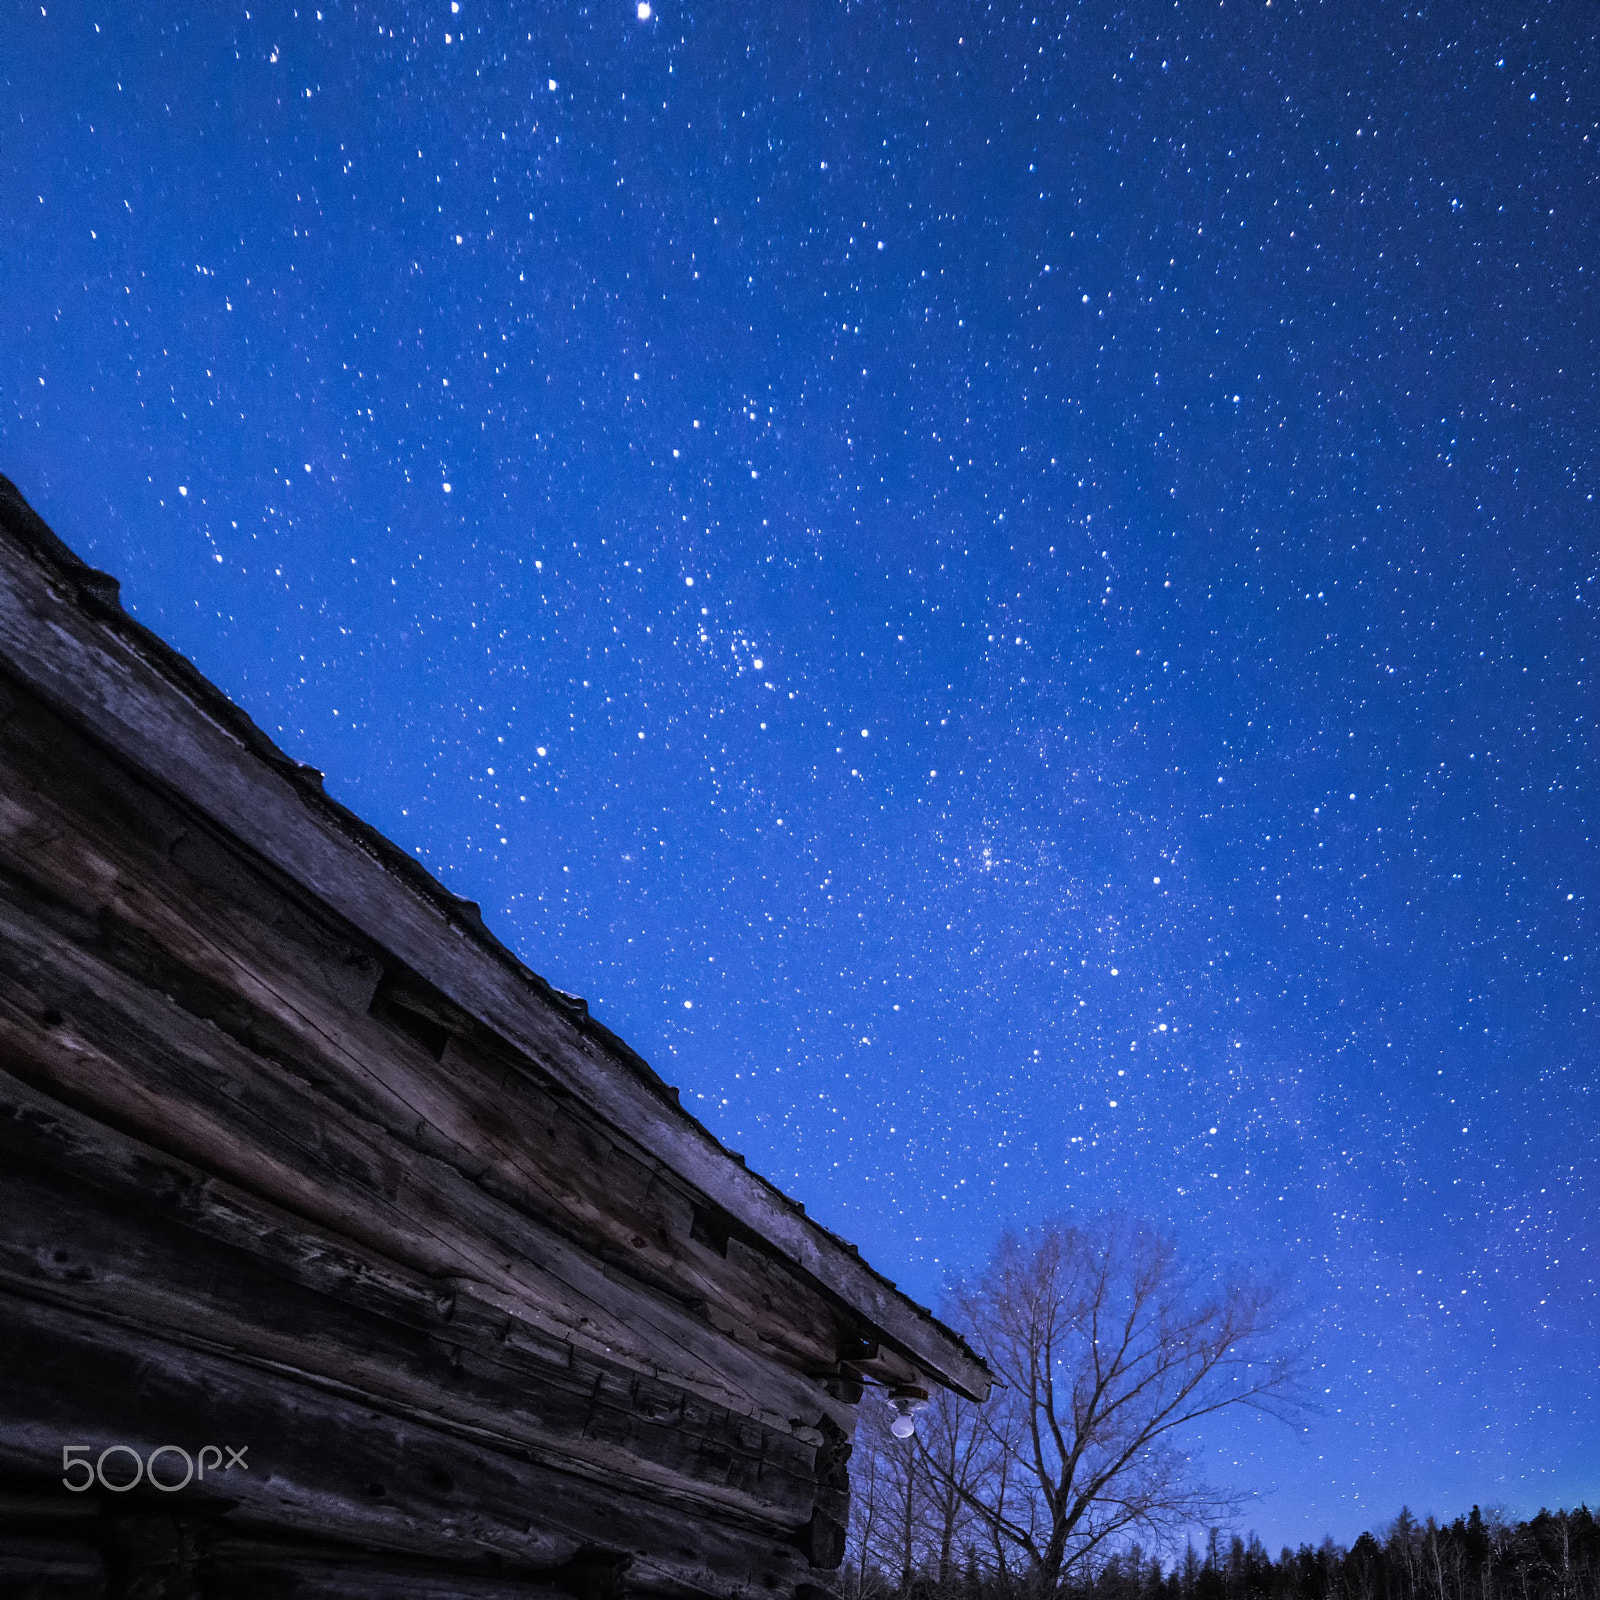 Nikon D800 + Samyang 14mm F2.8 ED AS IF UMC sample photo. Rural log cabin barn at night with stars and milky way photography